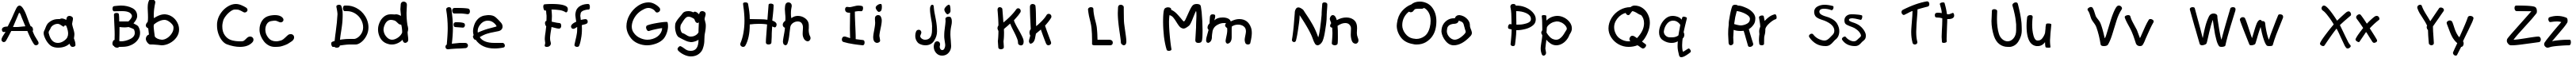 Пример написания английского алфавита шрифтом Teslic`sDocument